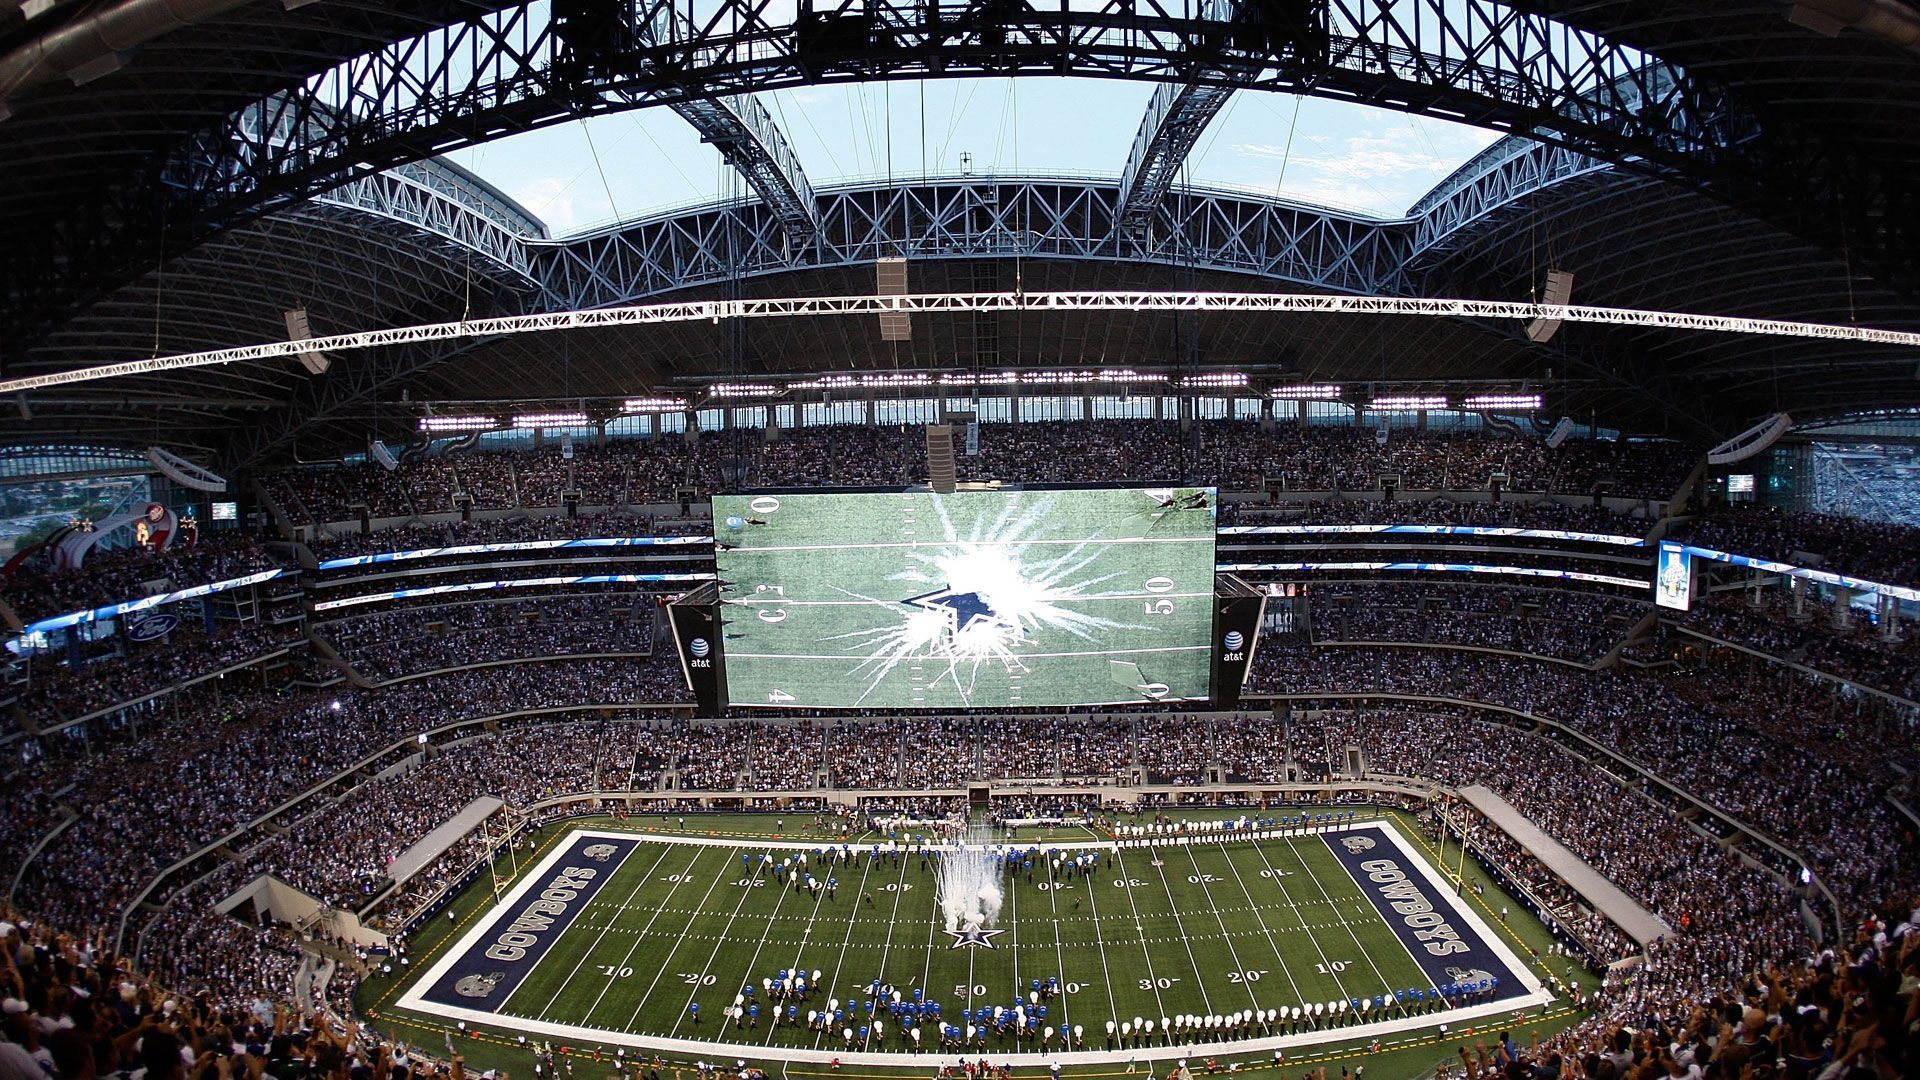 
                <strong>Platz 18 (geteilt): Dallas Cowboys</strong><br>
                &#x2022; Stadion: AT&T Stadium<br>&#x2022; Preis für ein kleines Bier: 9,50 Dollar <br>
              